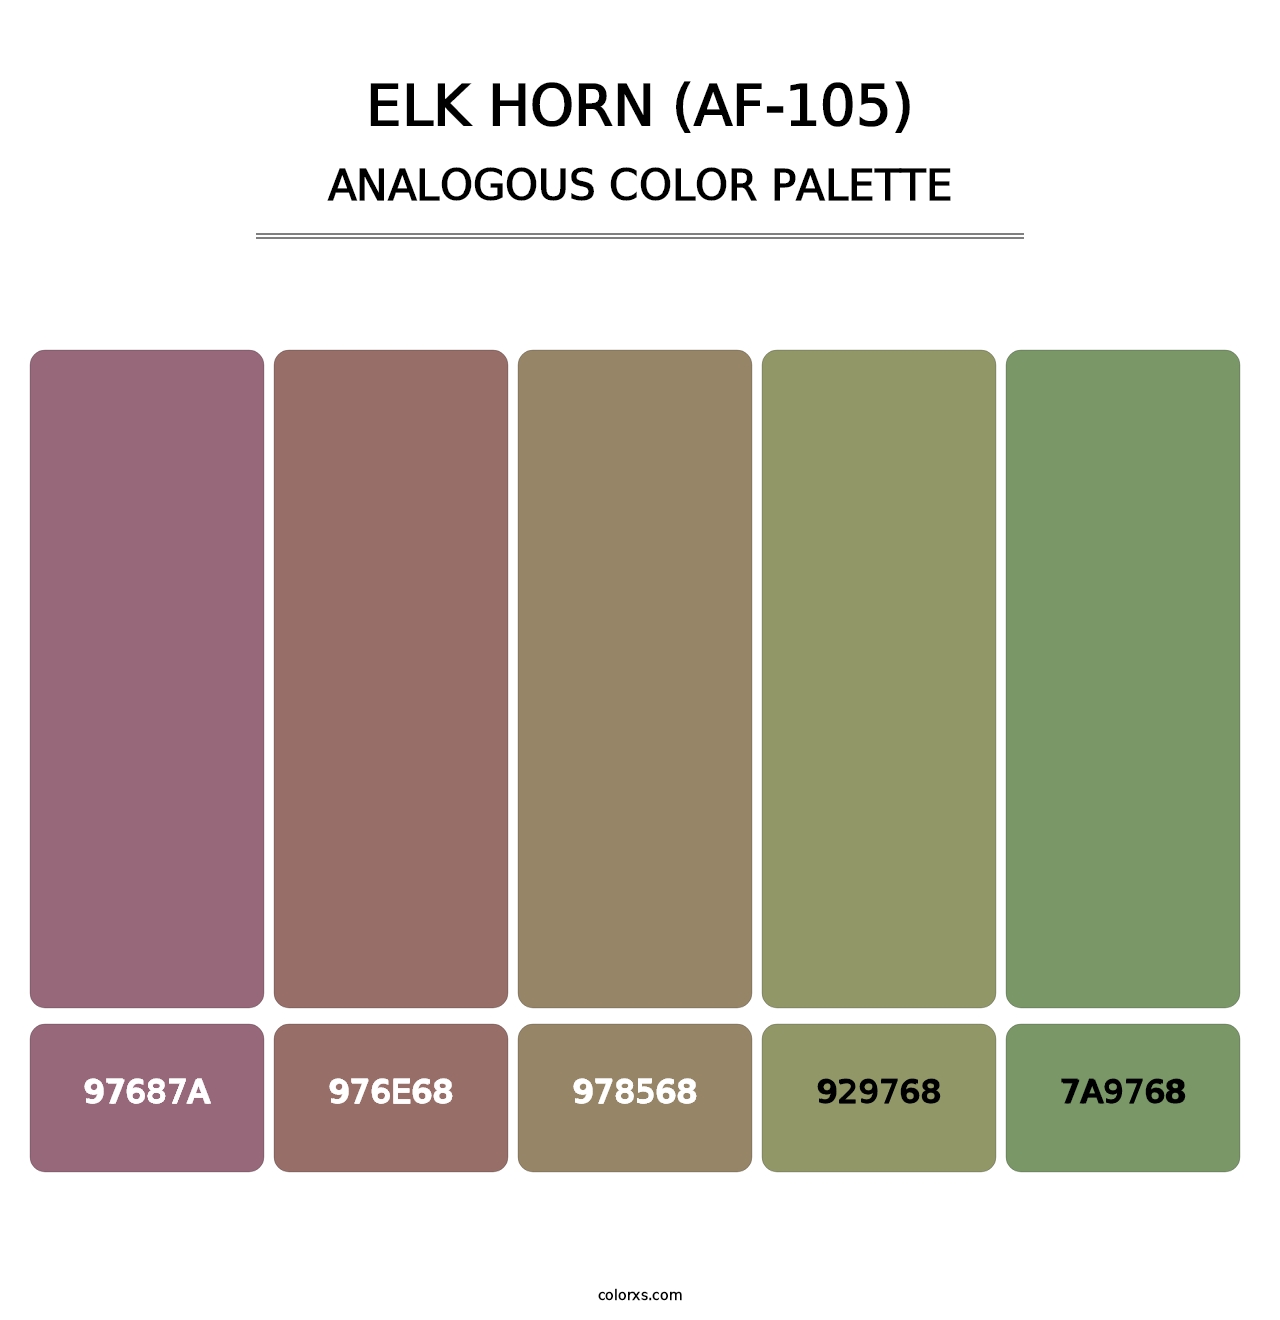 Elk Horn (AF-105) - Analogous Color Palette